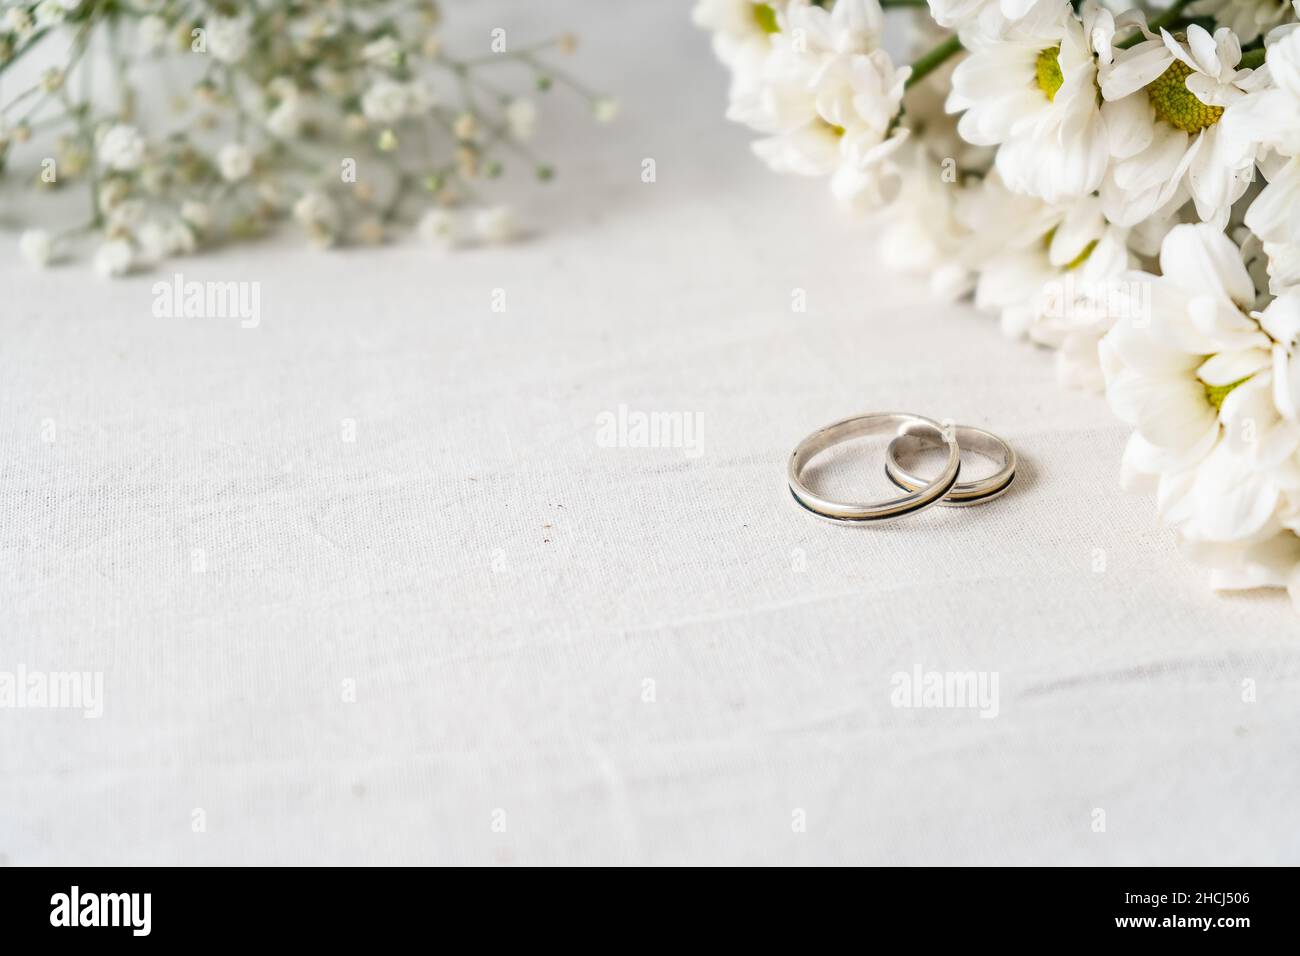 Ein Paar Eheringe auf einer weißen Oberfläche mit schönen weißen Blüten. Engagement und Liebe Konzept. Kopierbereich, differenzieller Fokus. Stockfoto